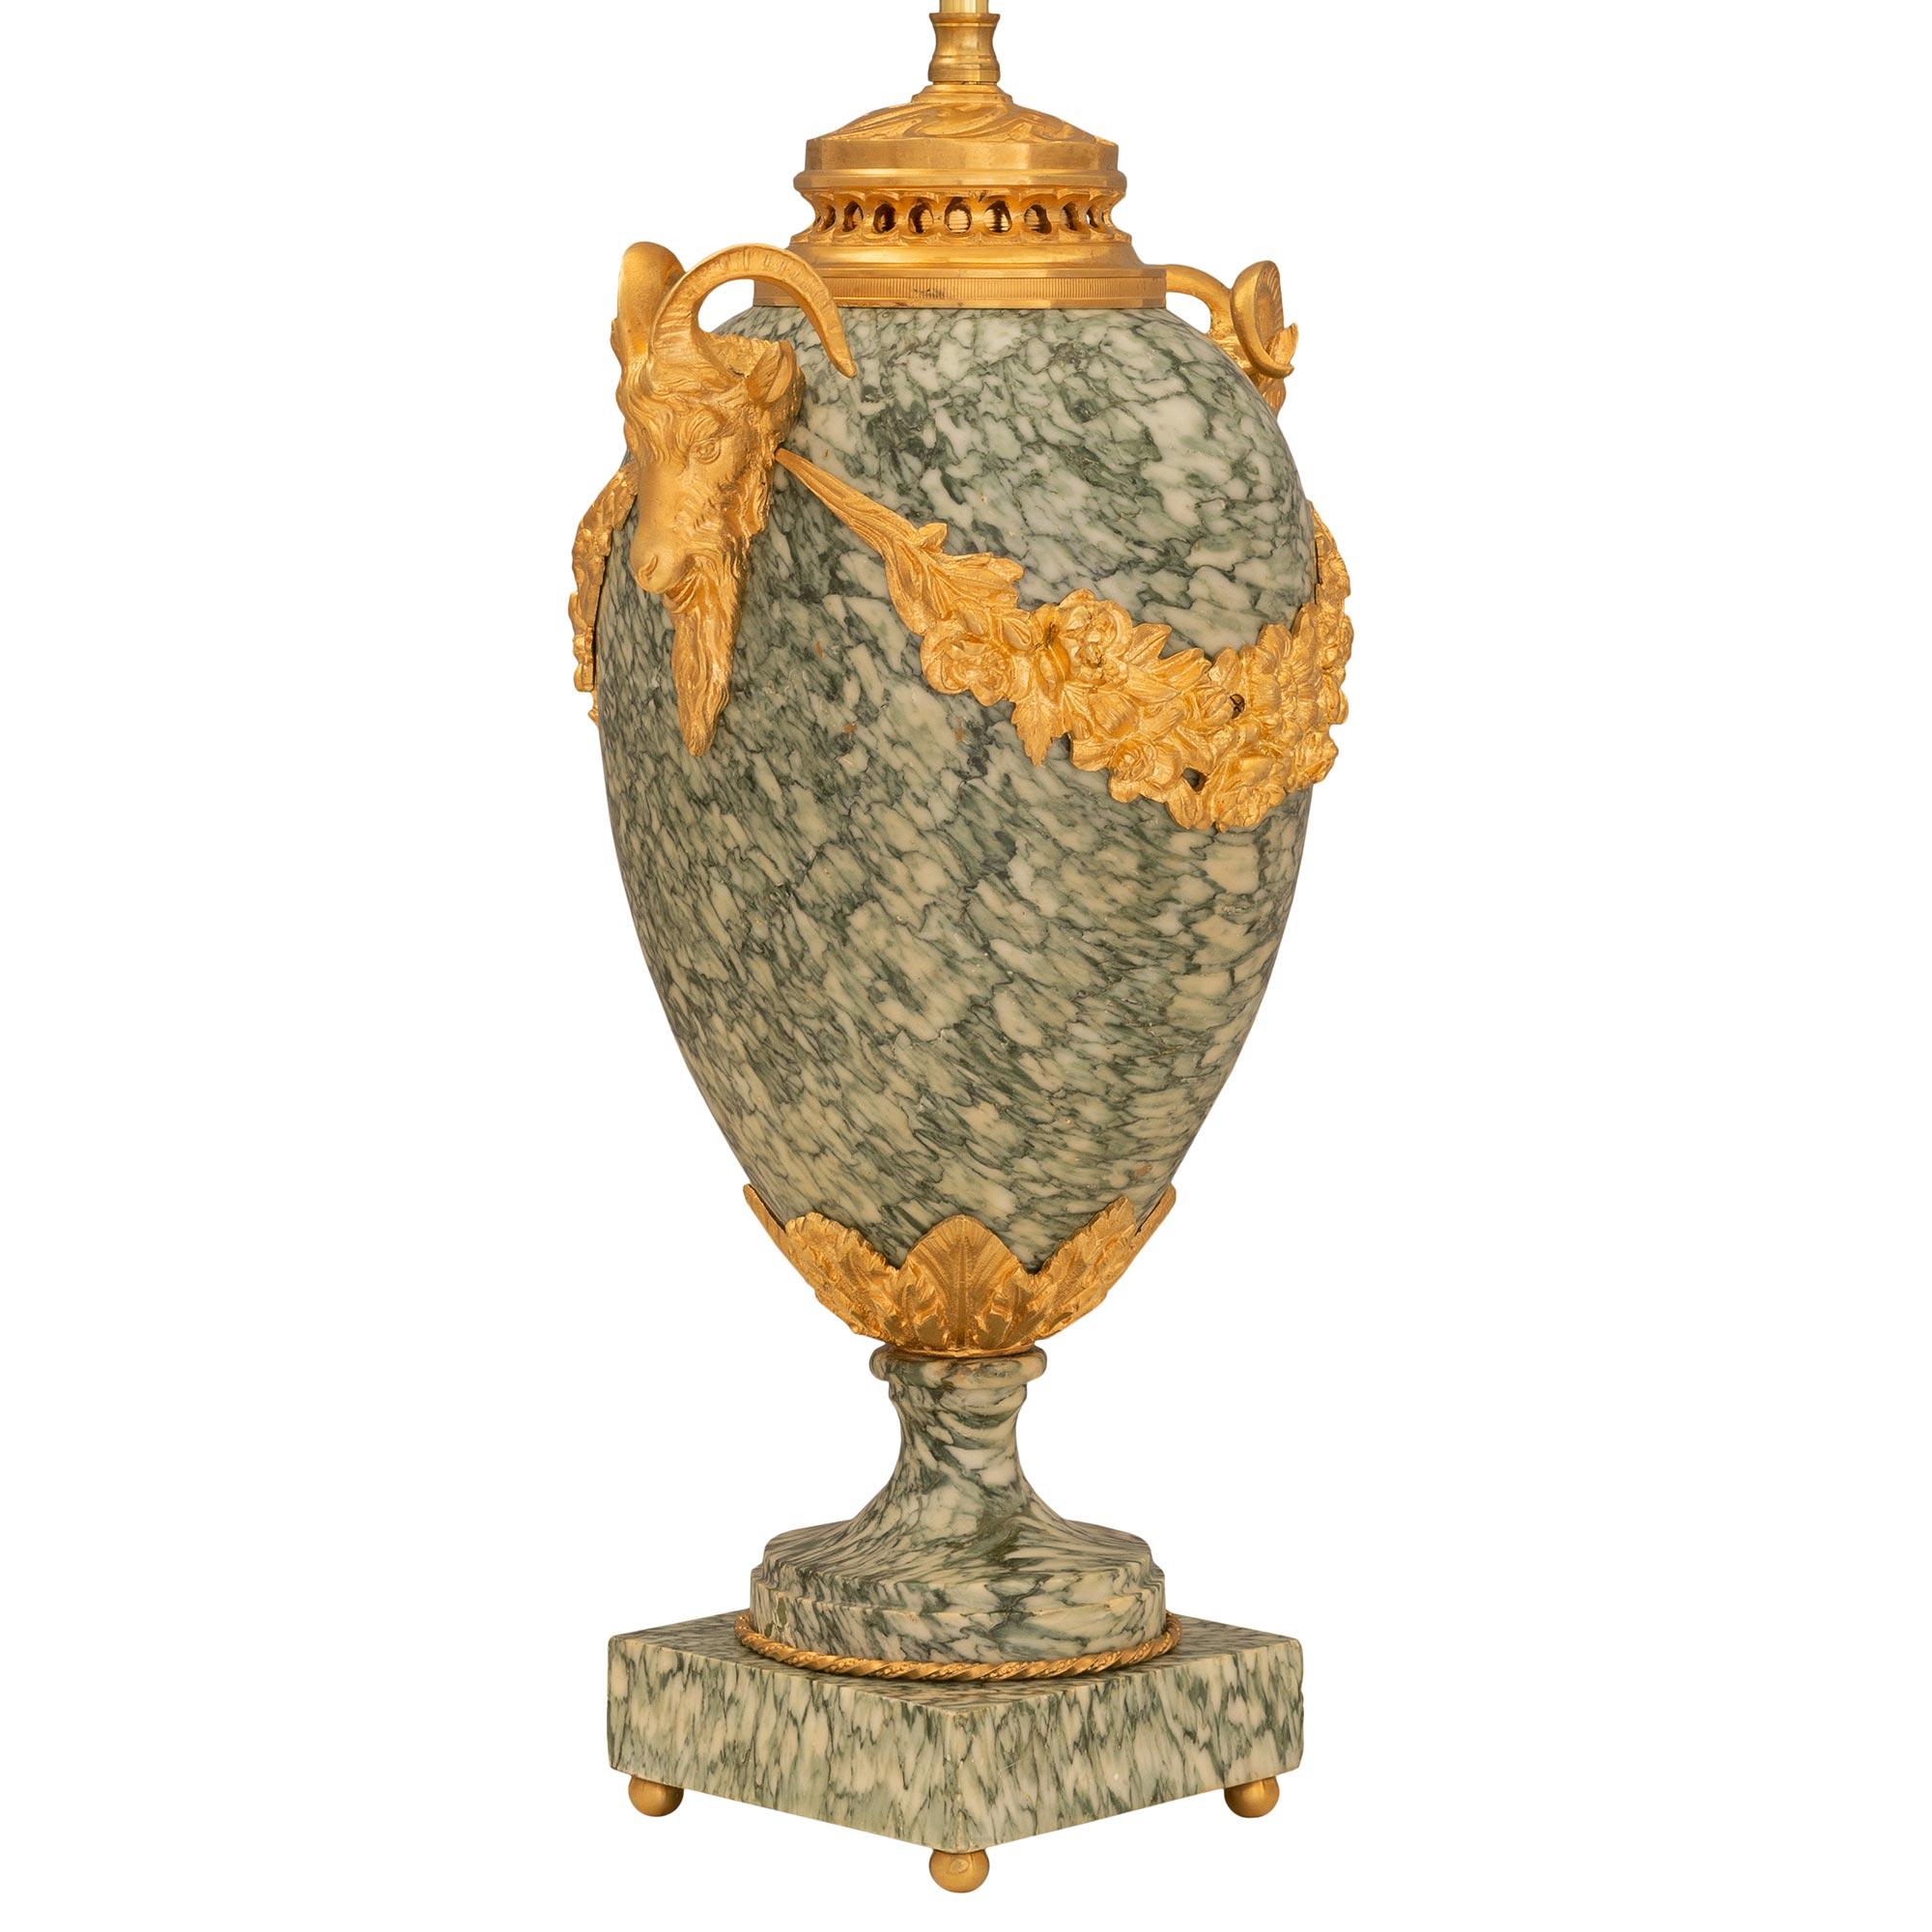 Une élégante paire d'urnes en bronze doré et marbre de style Louis XVI du 19ème siècle, montées en lampes. Chaque lampe est surmontée d'une base carrée en marbre sous le socle richement ciselé, satiné et bruni, avec un design torsadé et cannelé